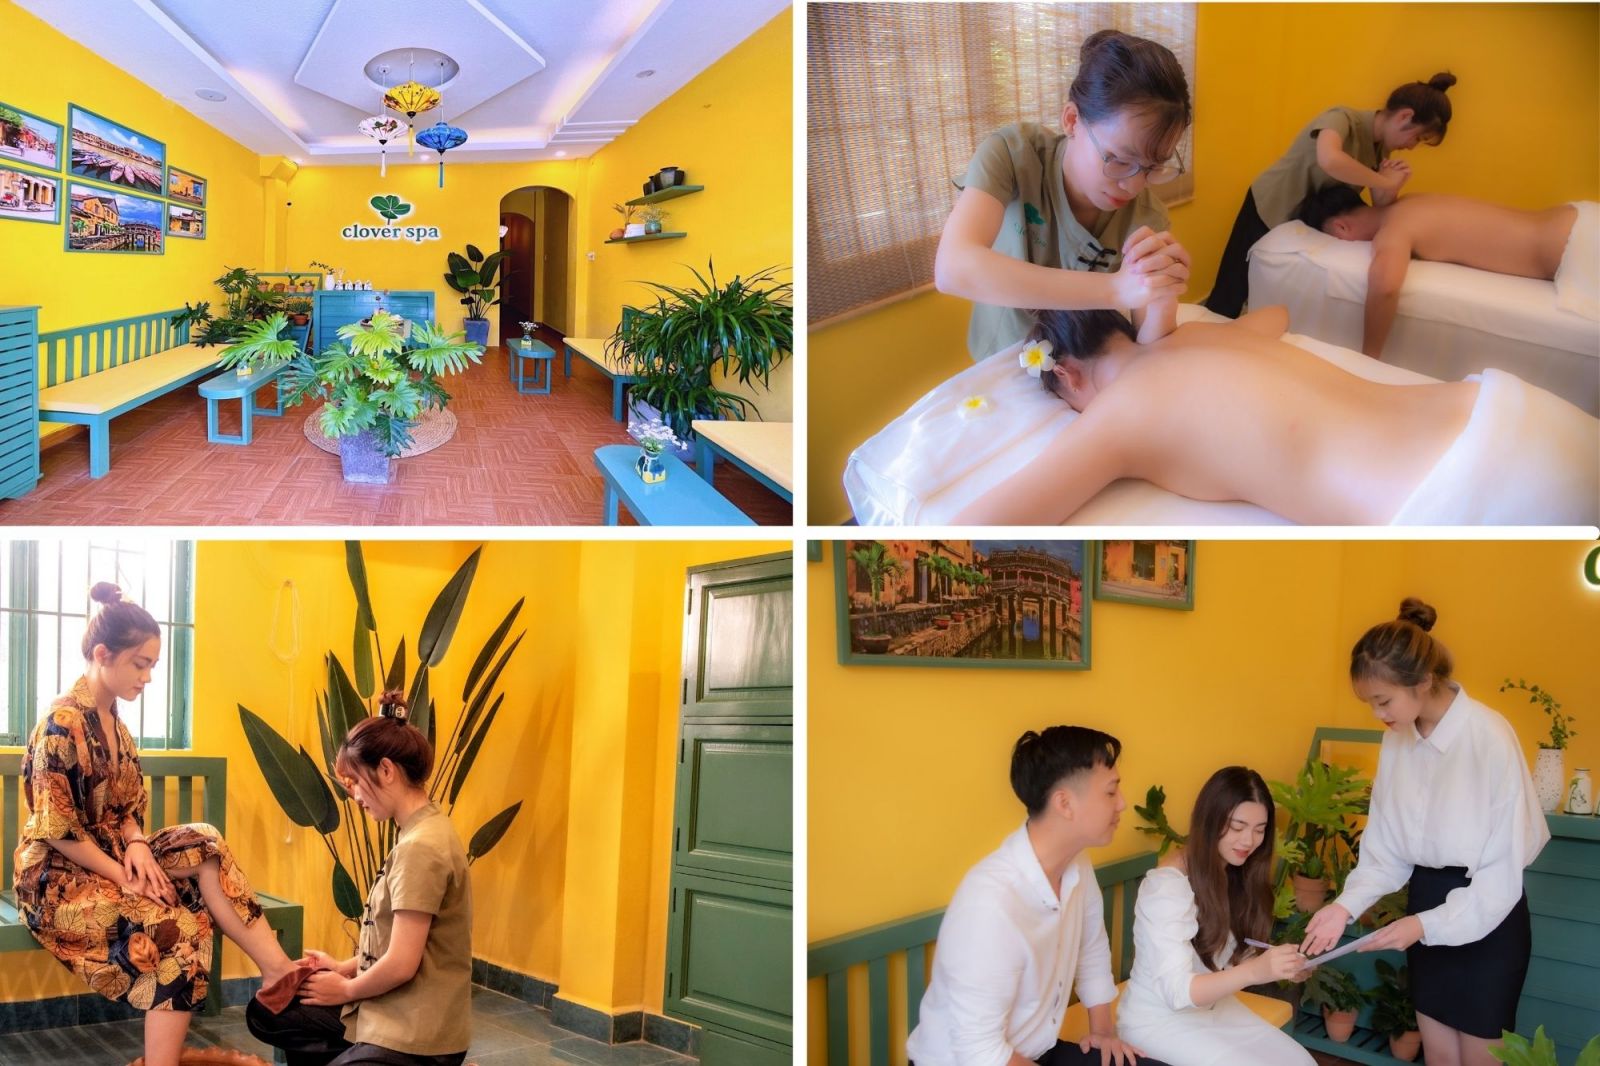 quy trình massage tại Clover spa